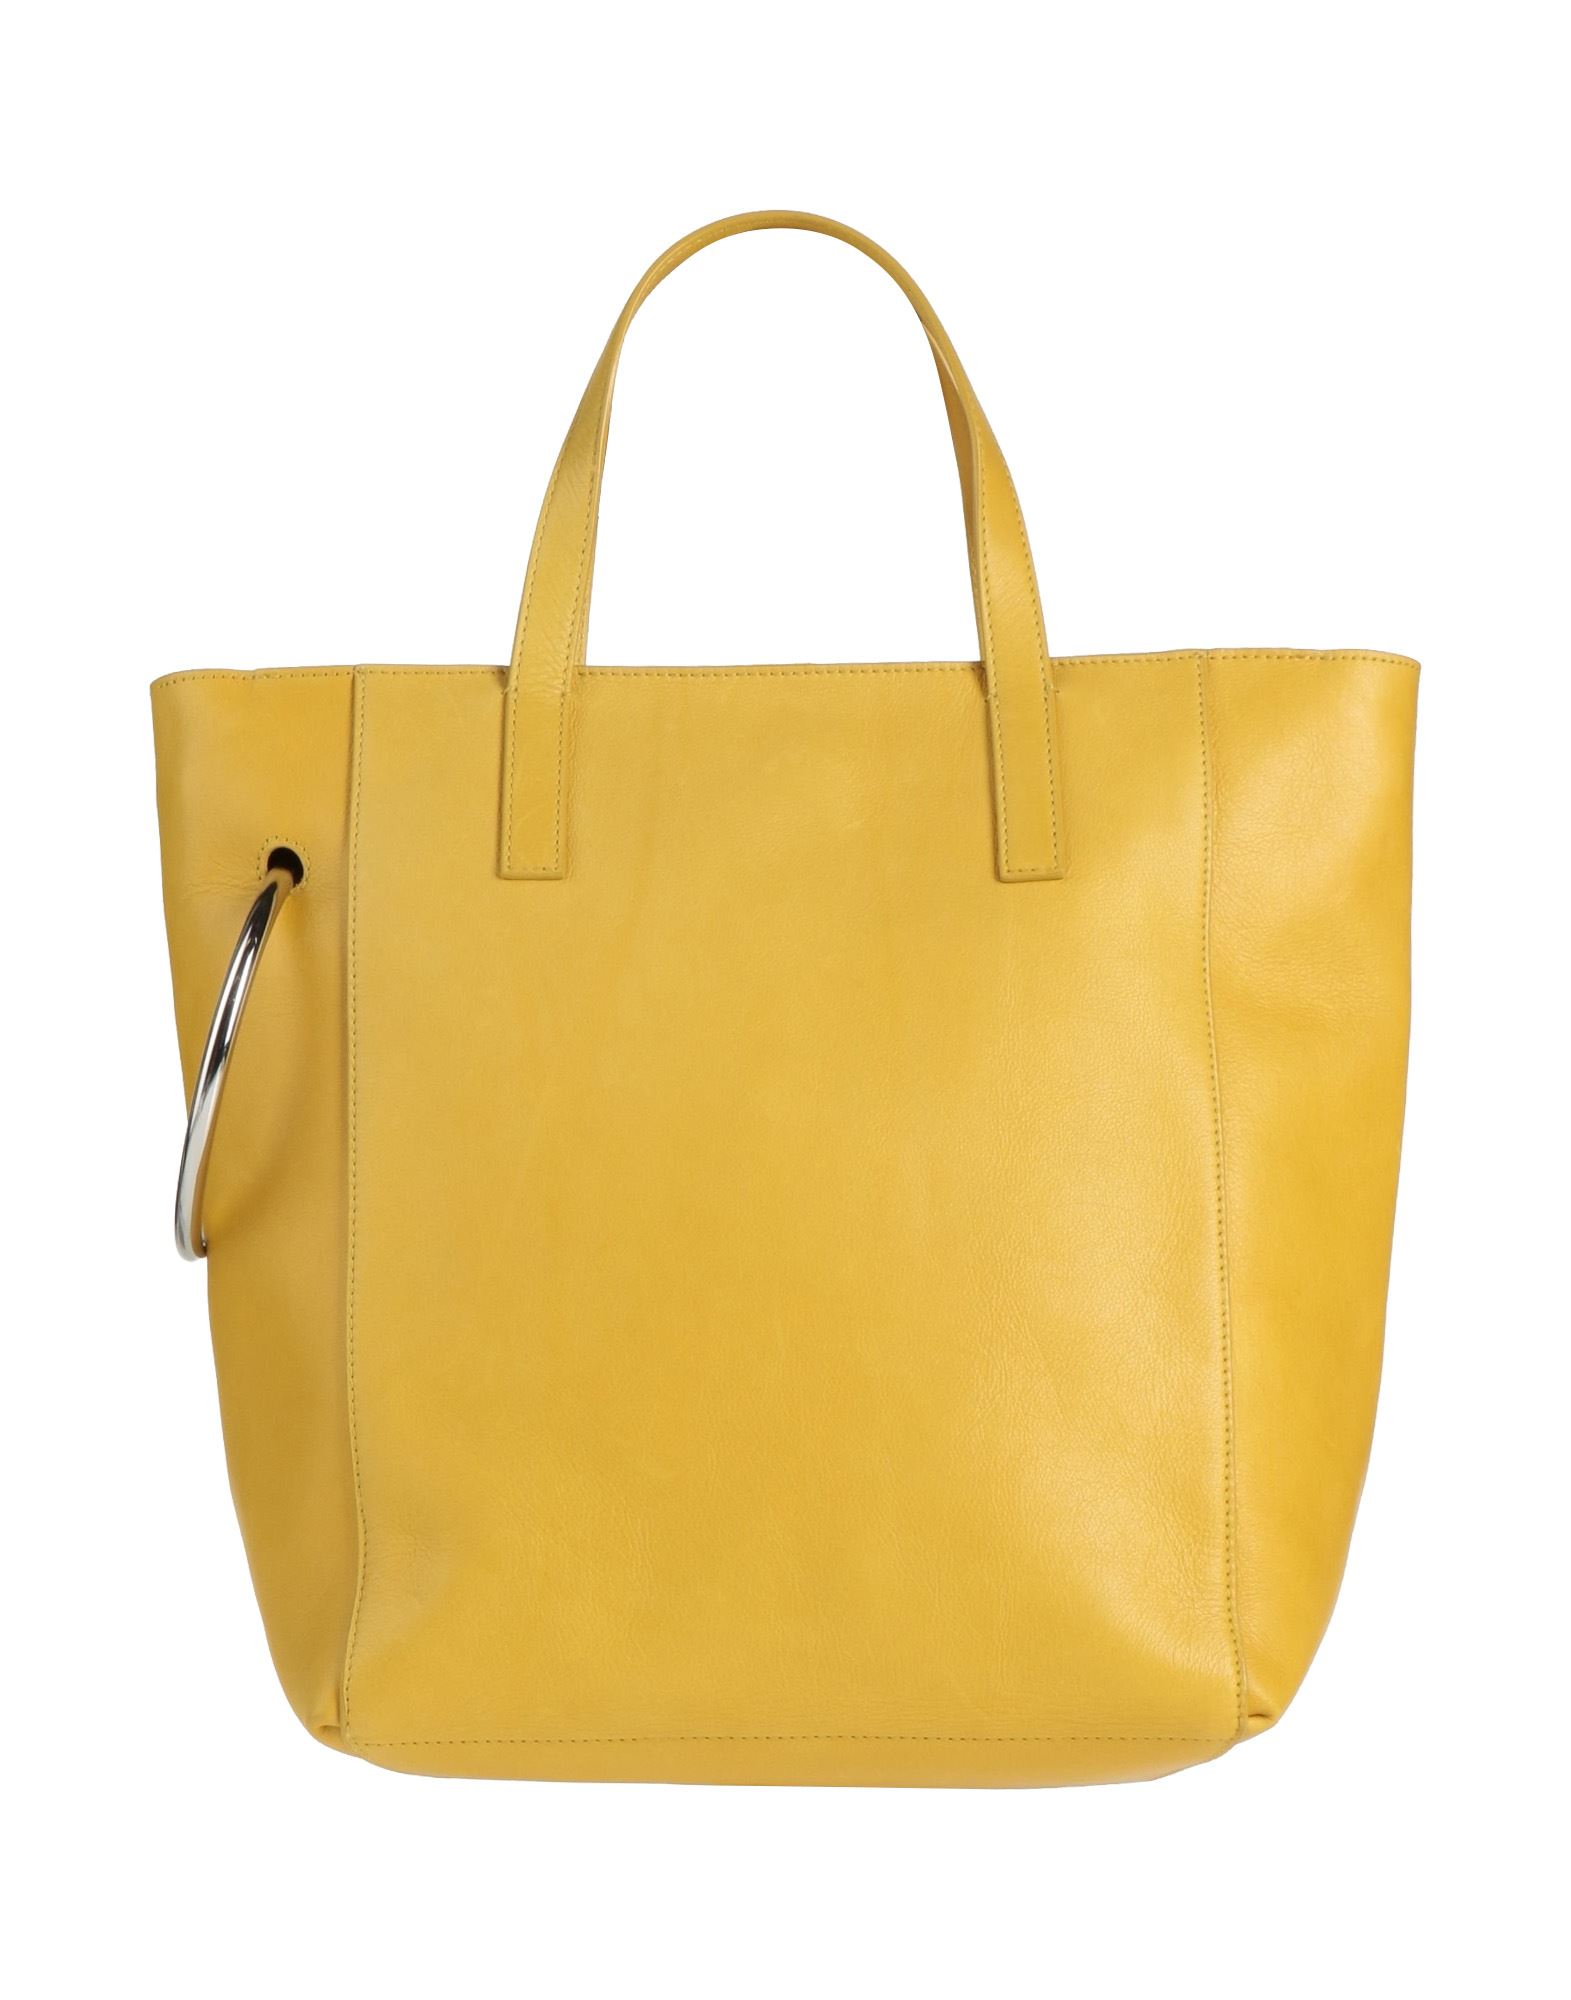 Dries Van Noten Handbags In Yellow